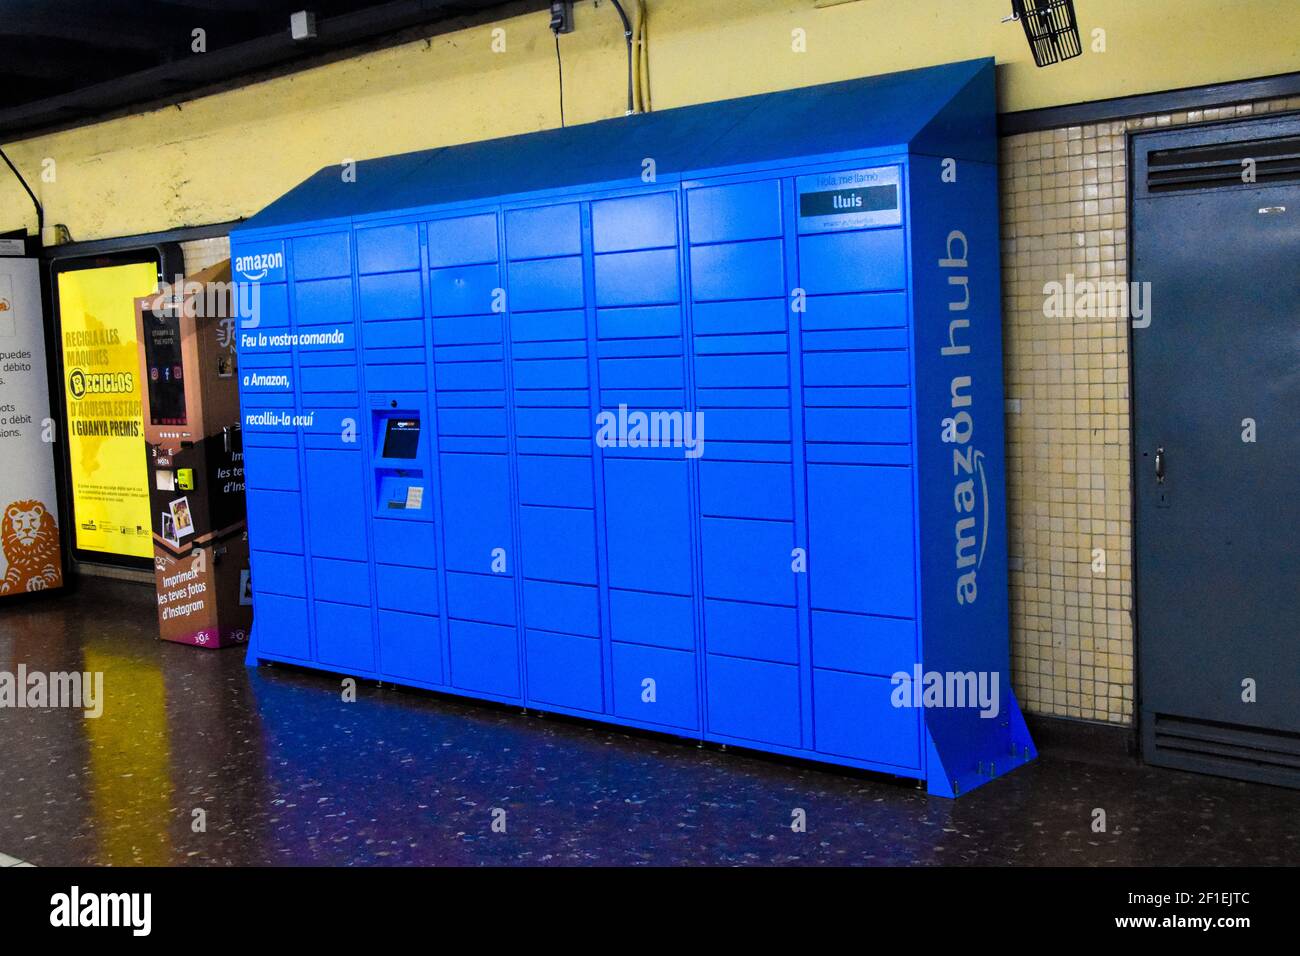 Hub blu di amazon immagini e fotografie stock ad alta risoluzione - Alamy